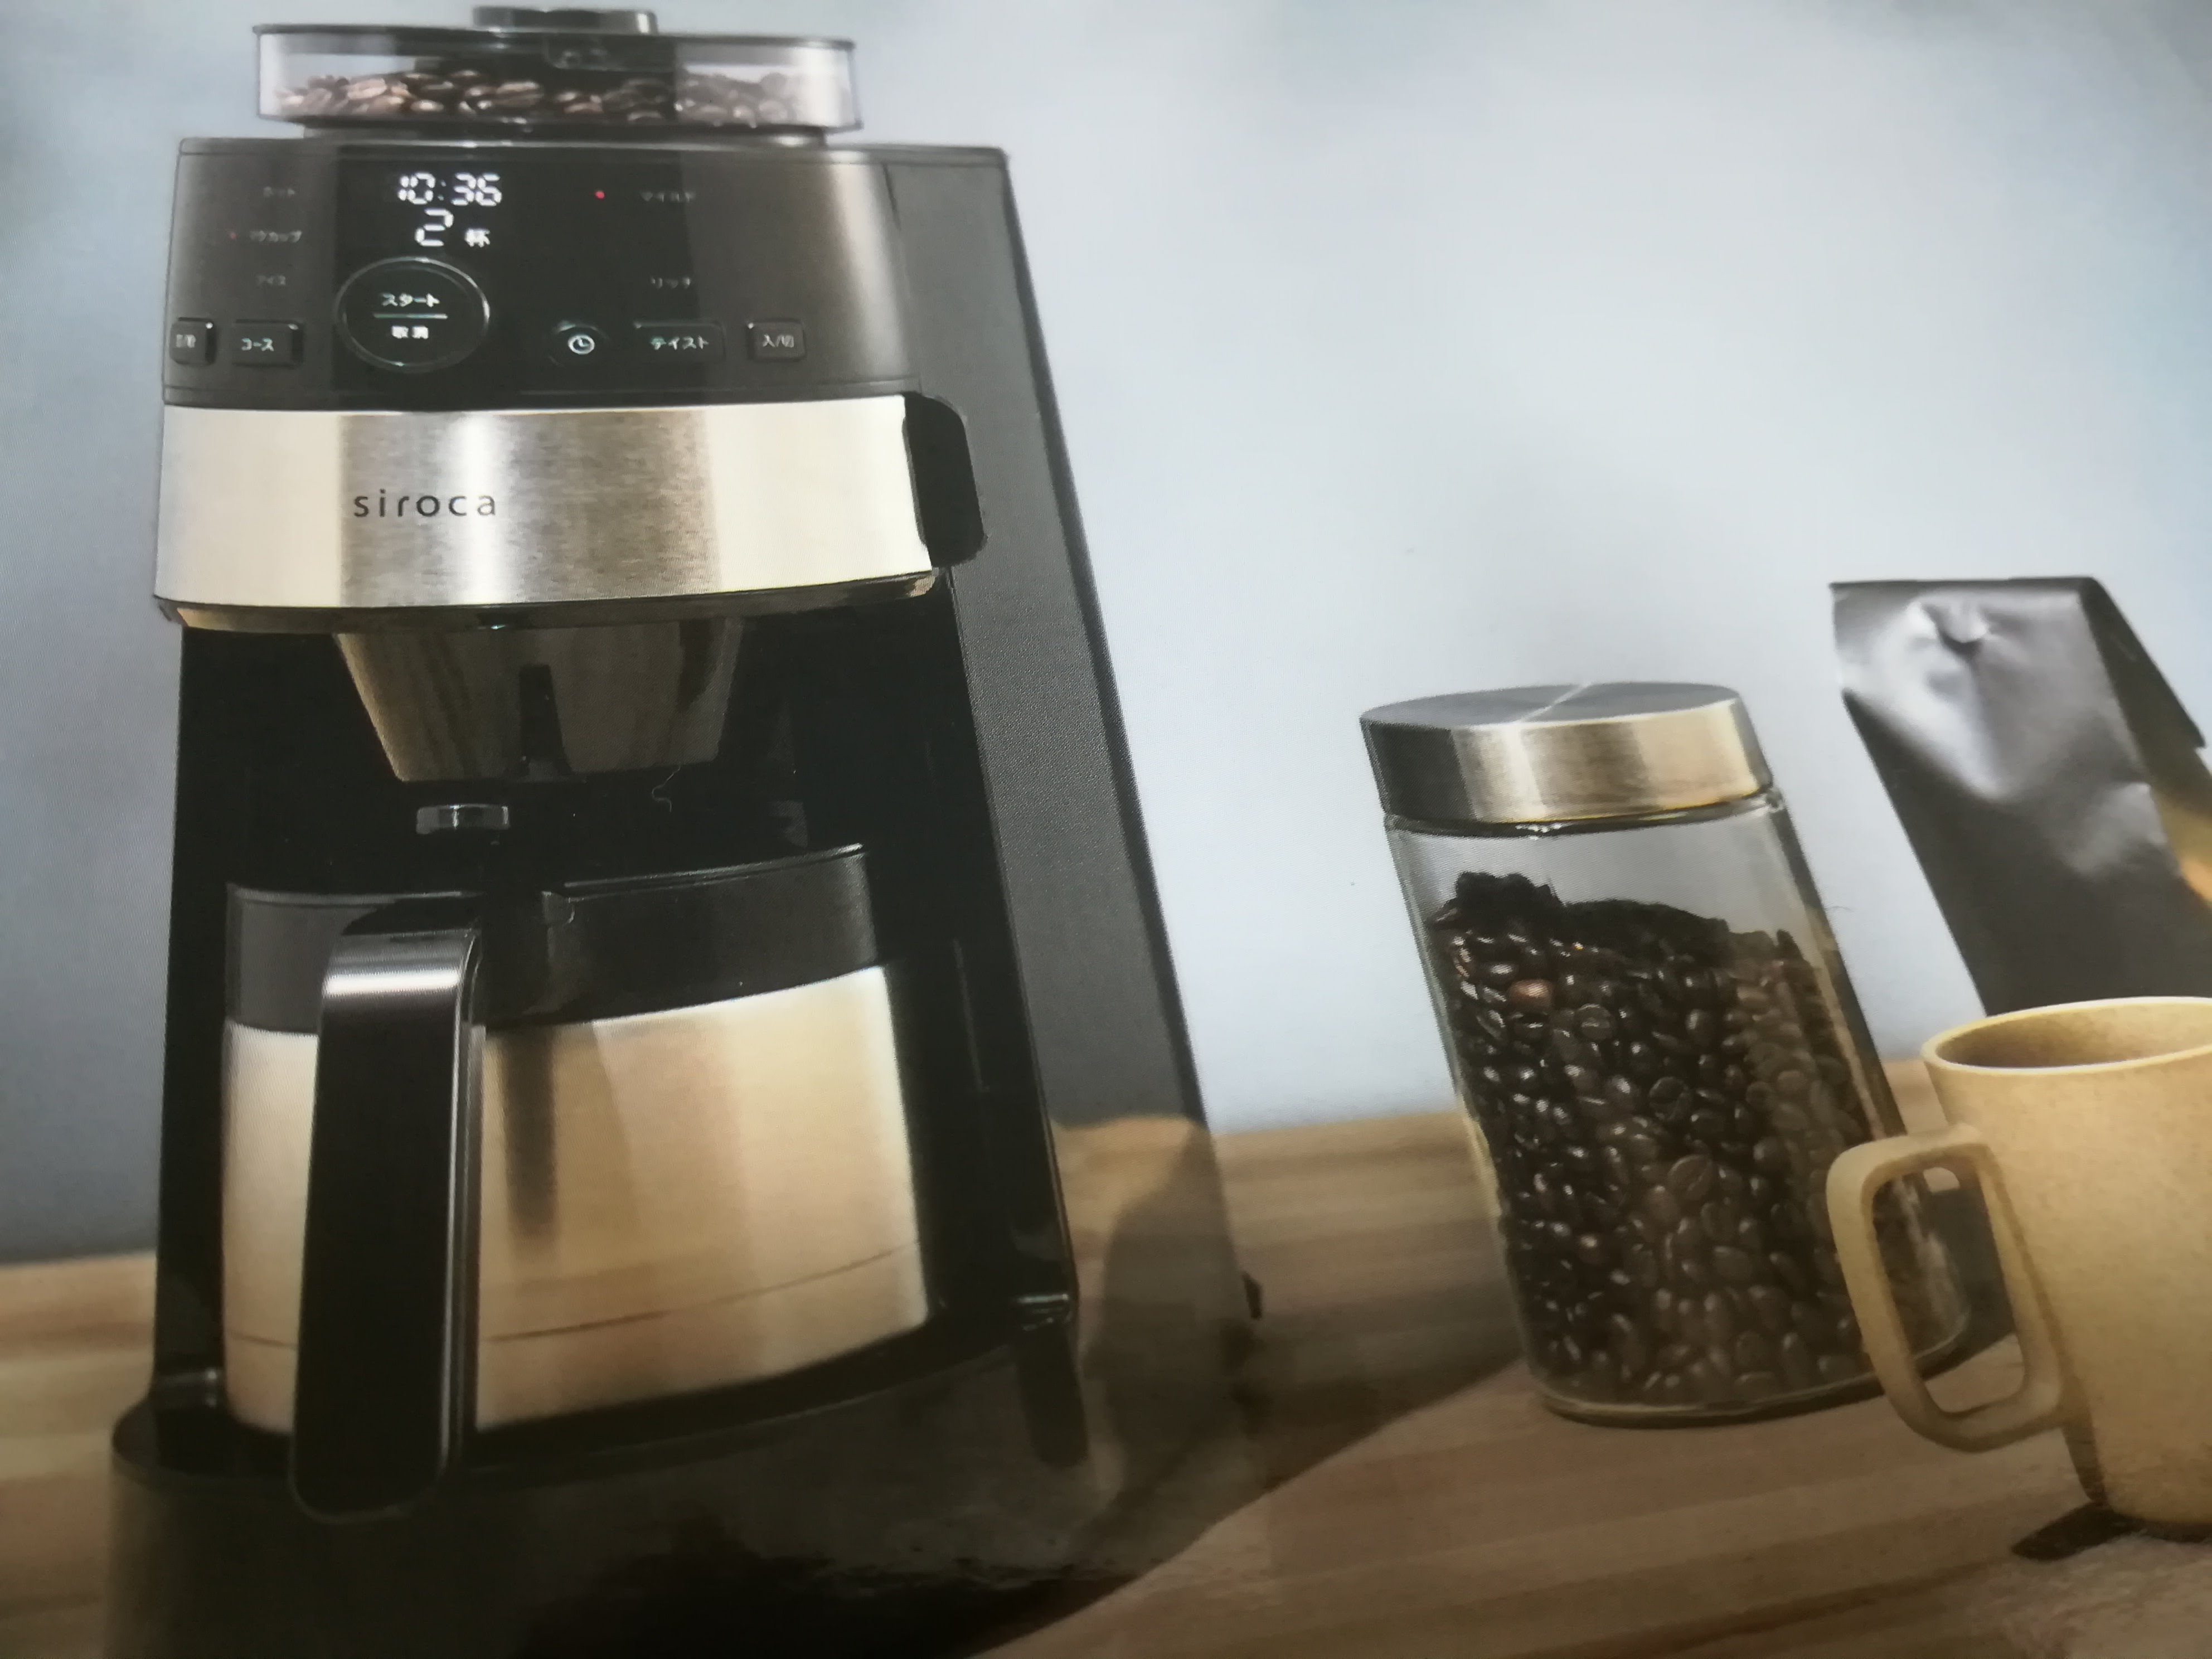 どれがいい？sirocaコーン式全自動コーヒーメーカーのSC-Cシリーズは3つあるけど。 | もののせかい